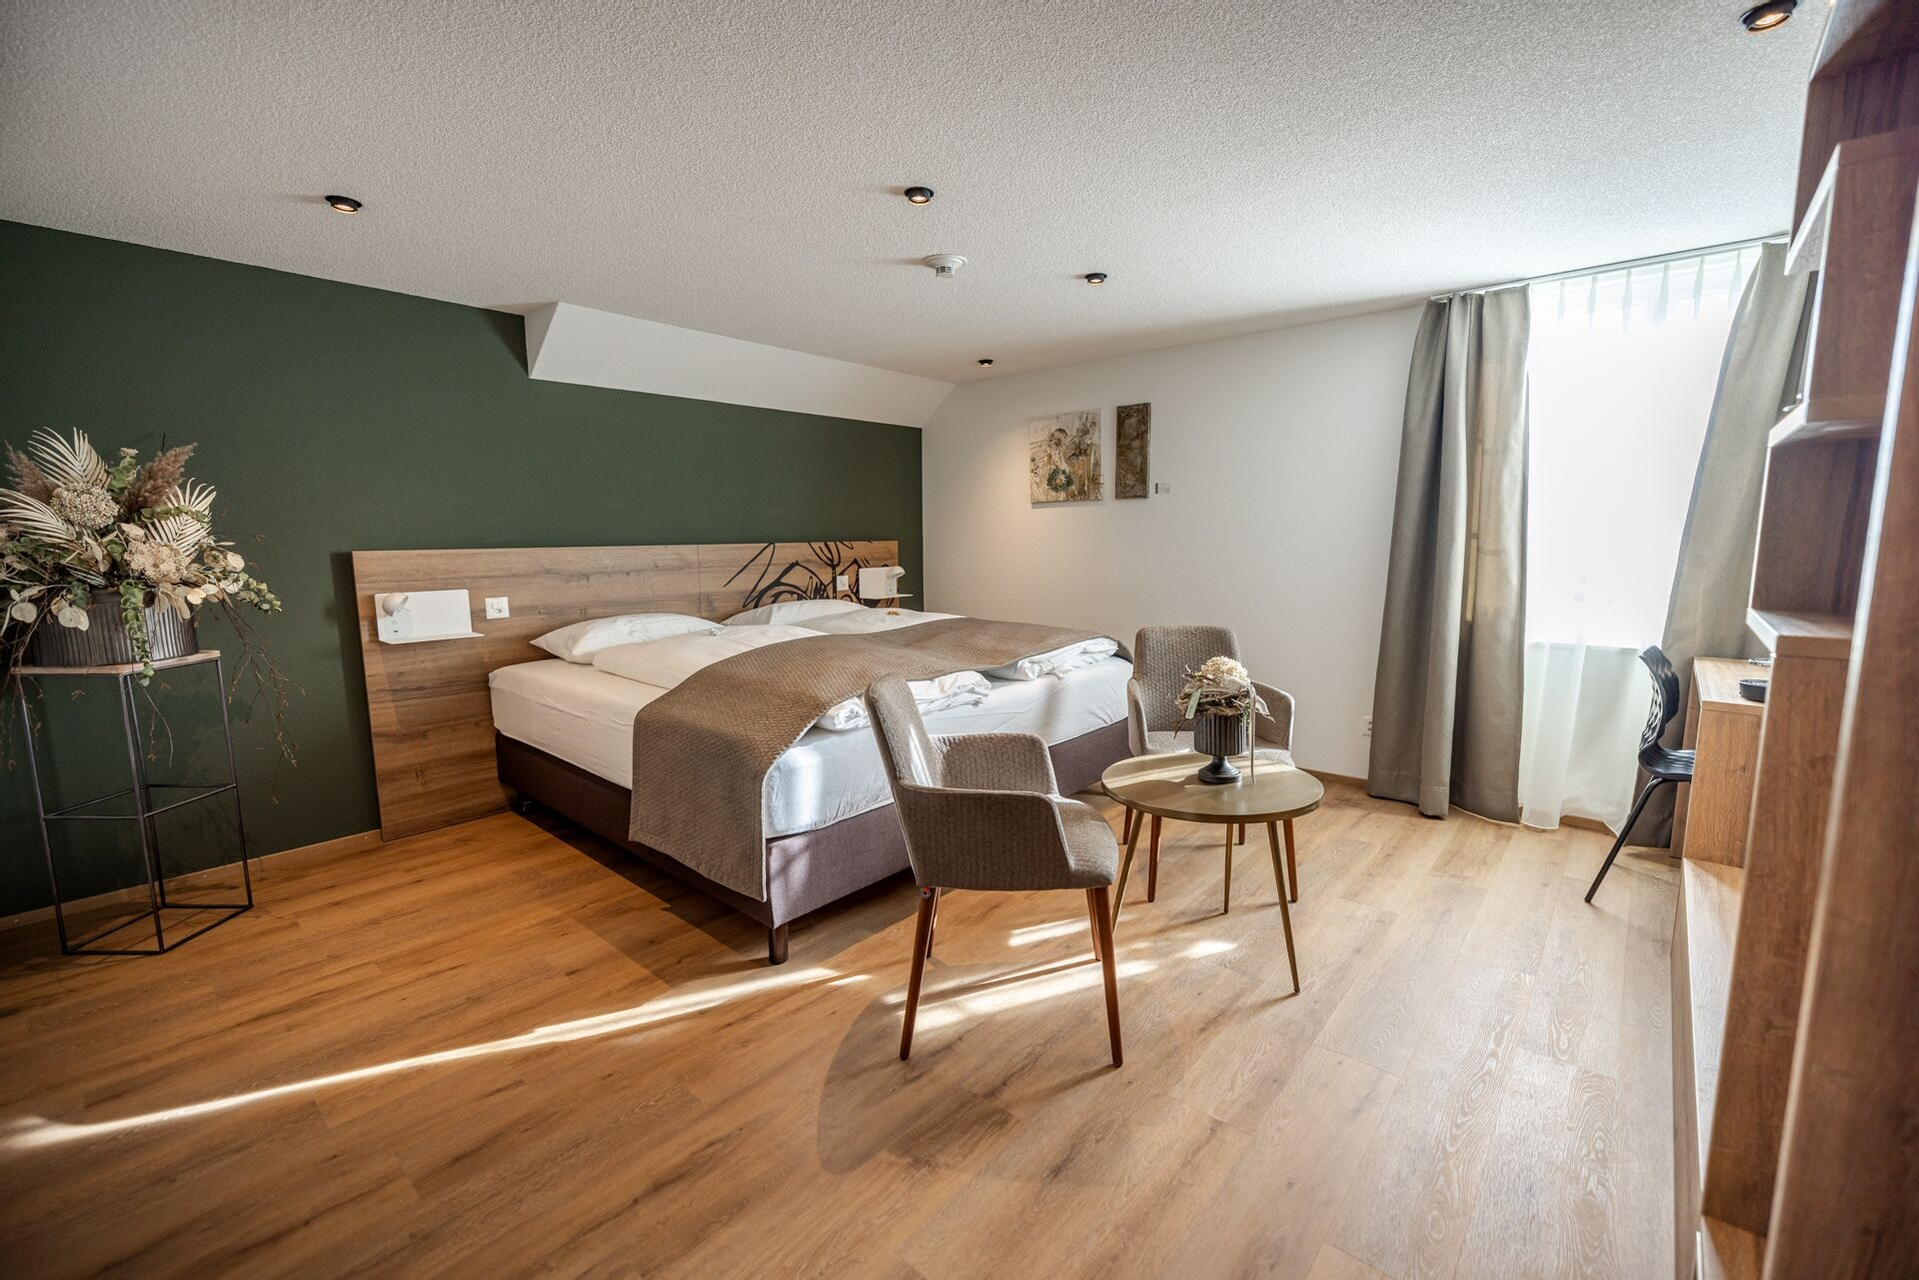 Bedroom 4, Hotel & Restaurant Baren, Wangen